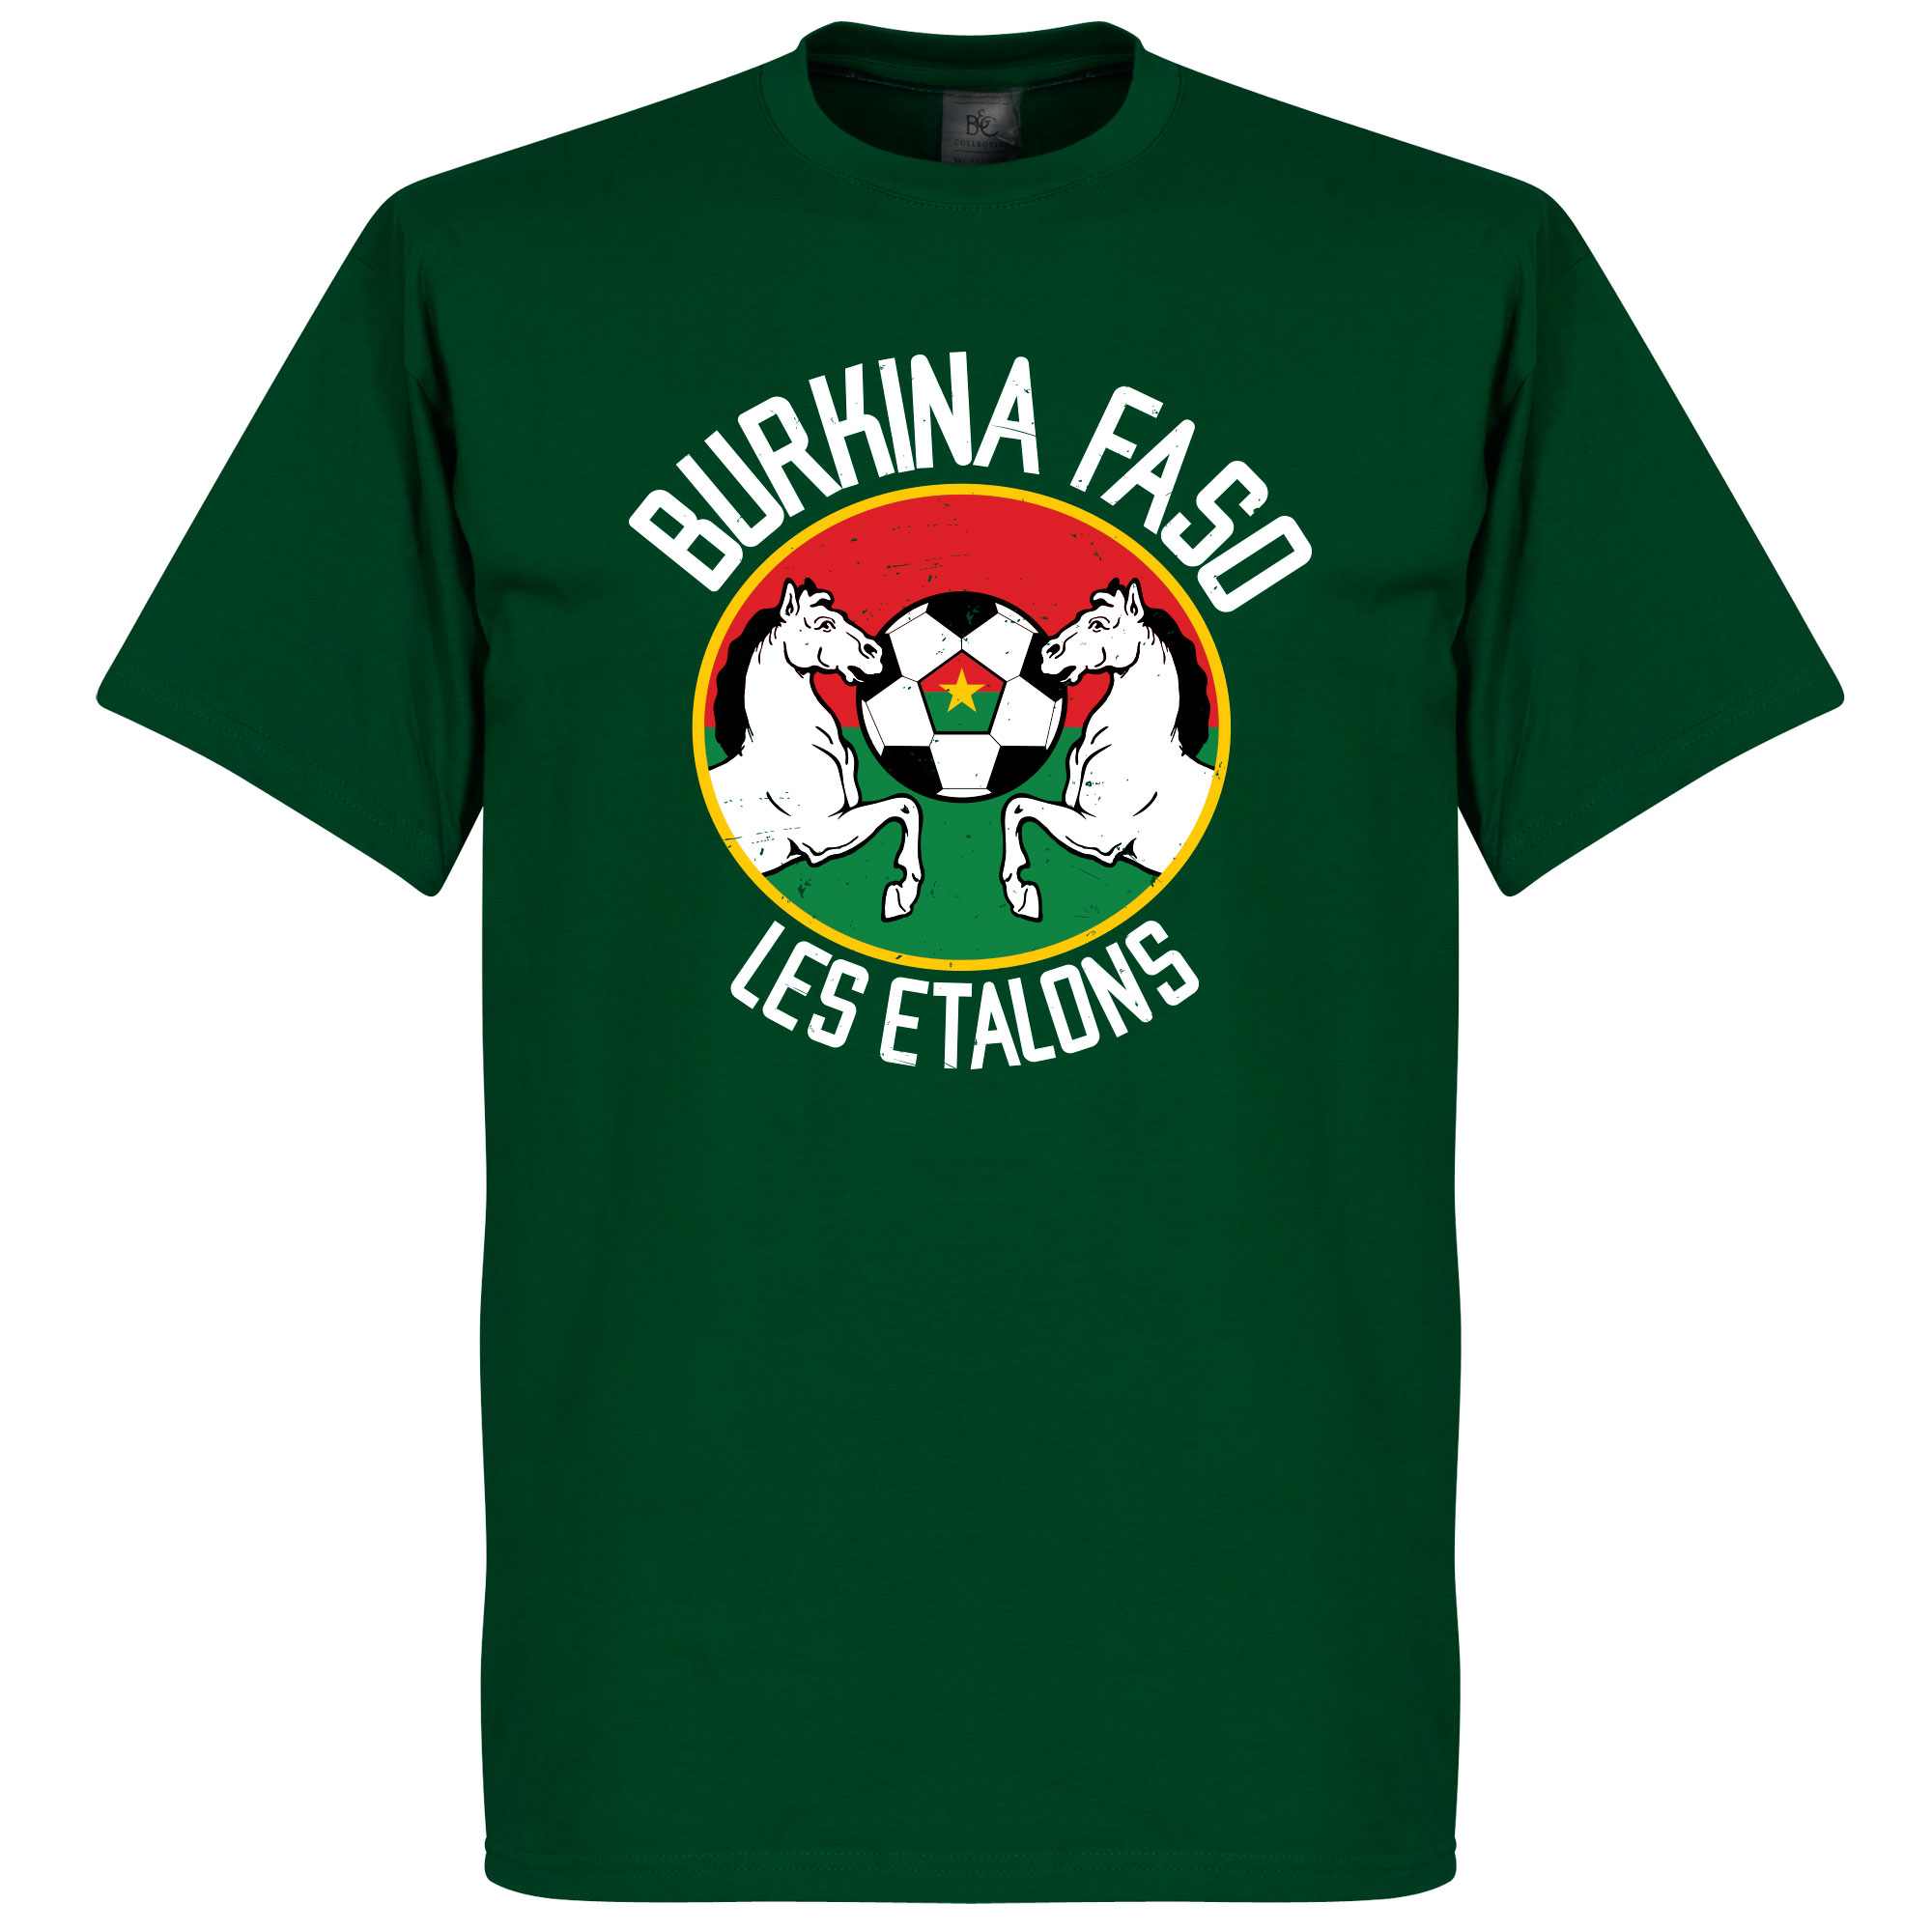 Burkina Faso Les Etalons T-Shirt S